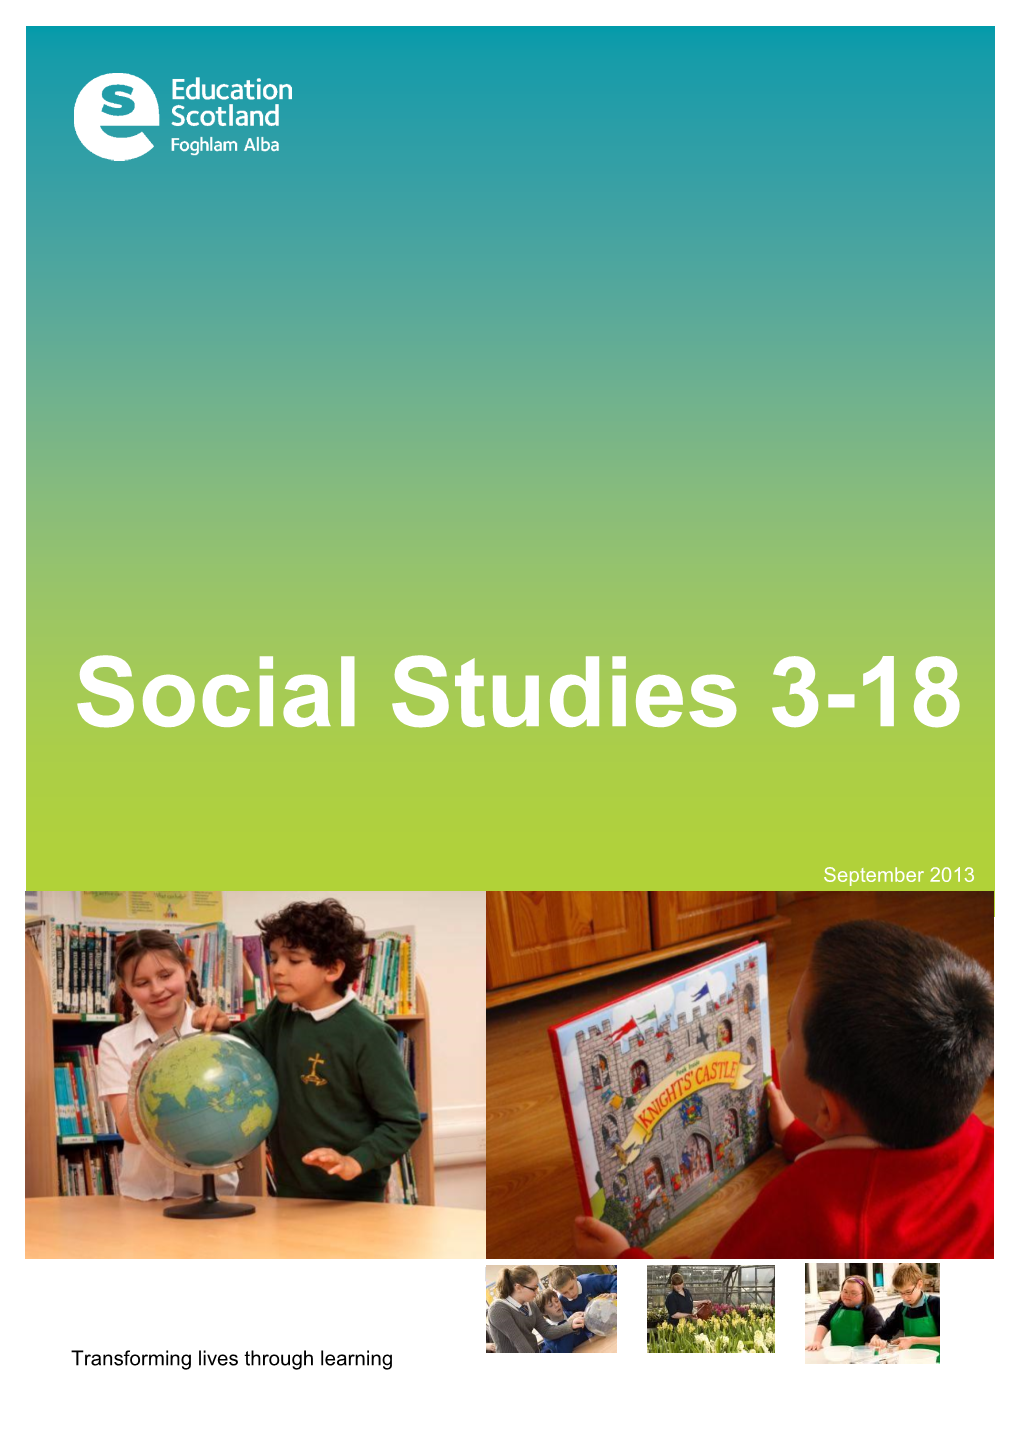 Social Studies 3-18 Impact Report 2013 Update